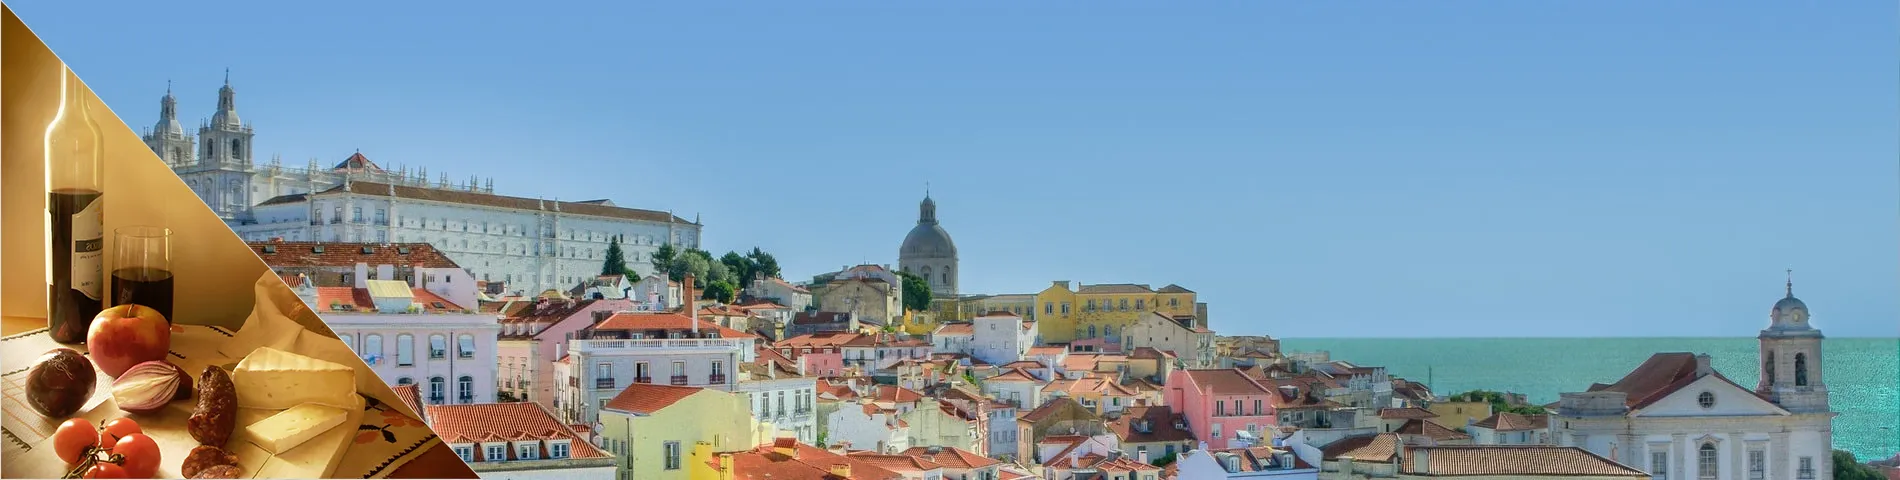 Lisbon - Portuguese & Culture